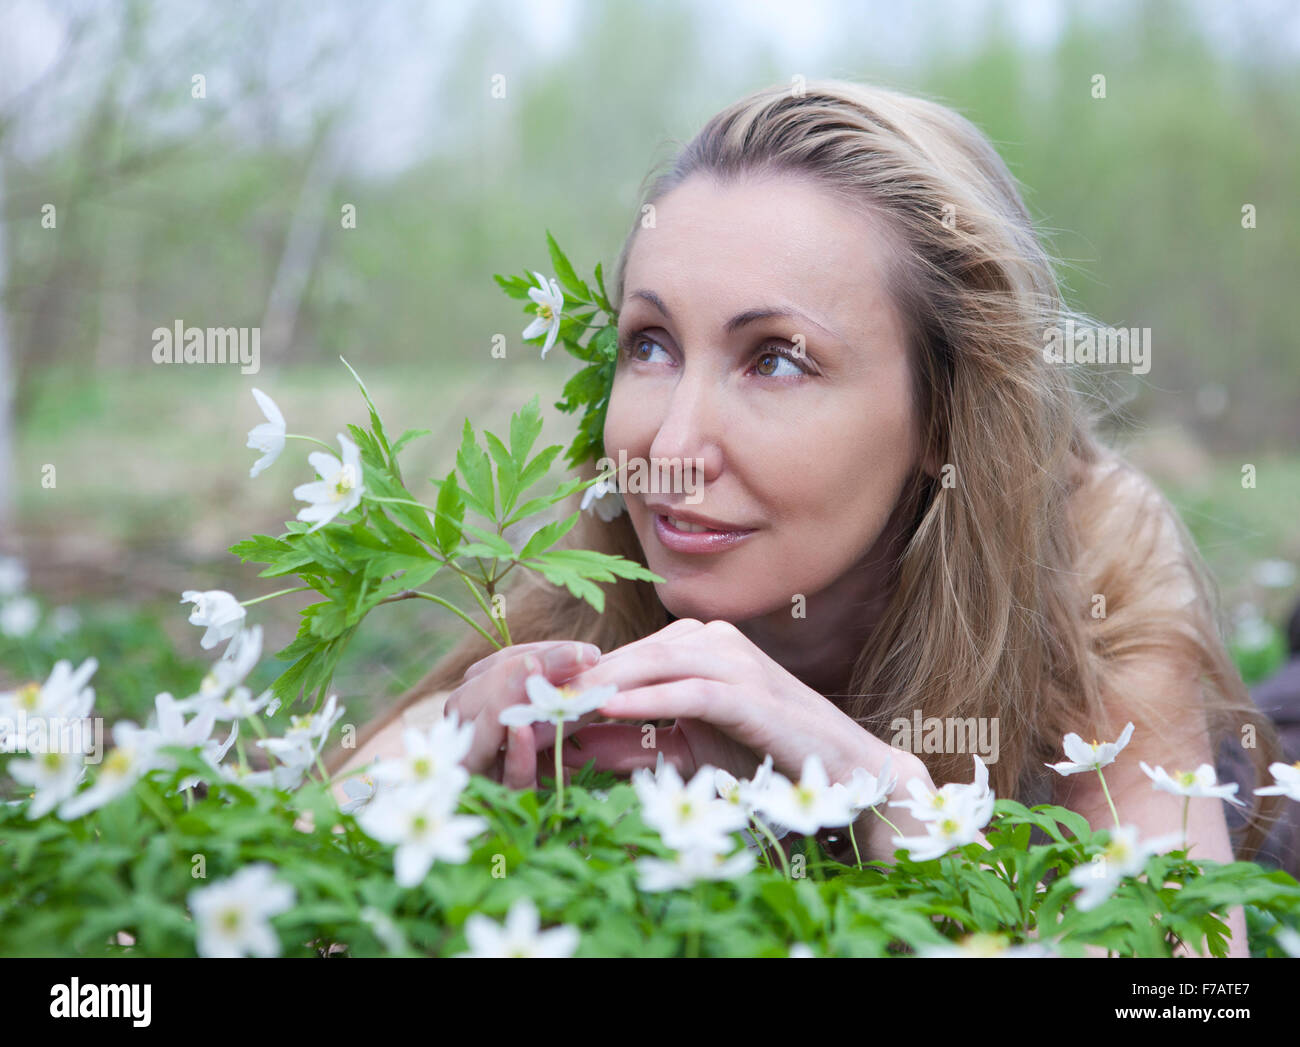 La belle jeune femme sur une clairière de perce-neige en fleurs Banque D'Images